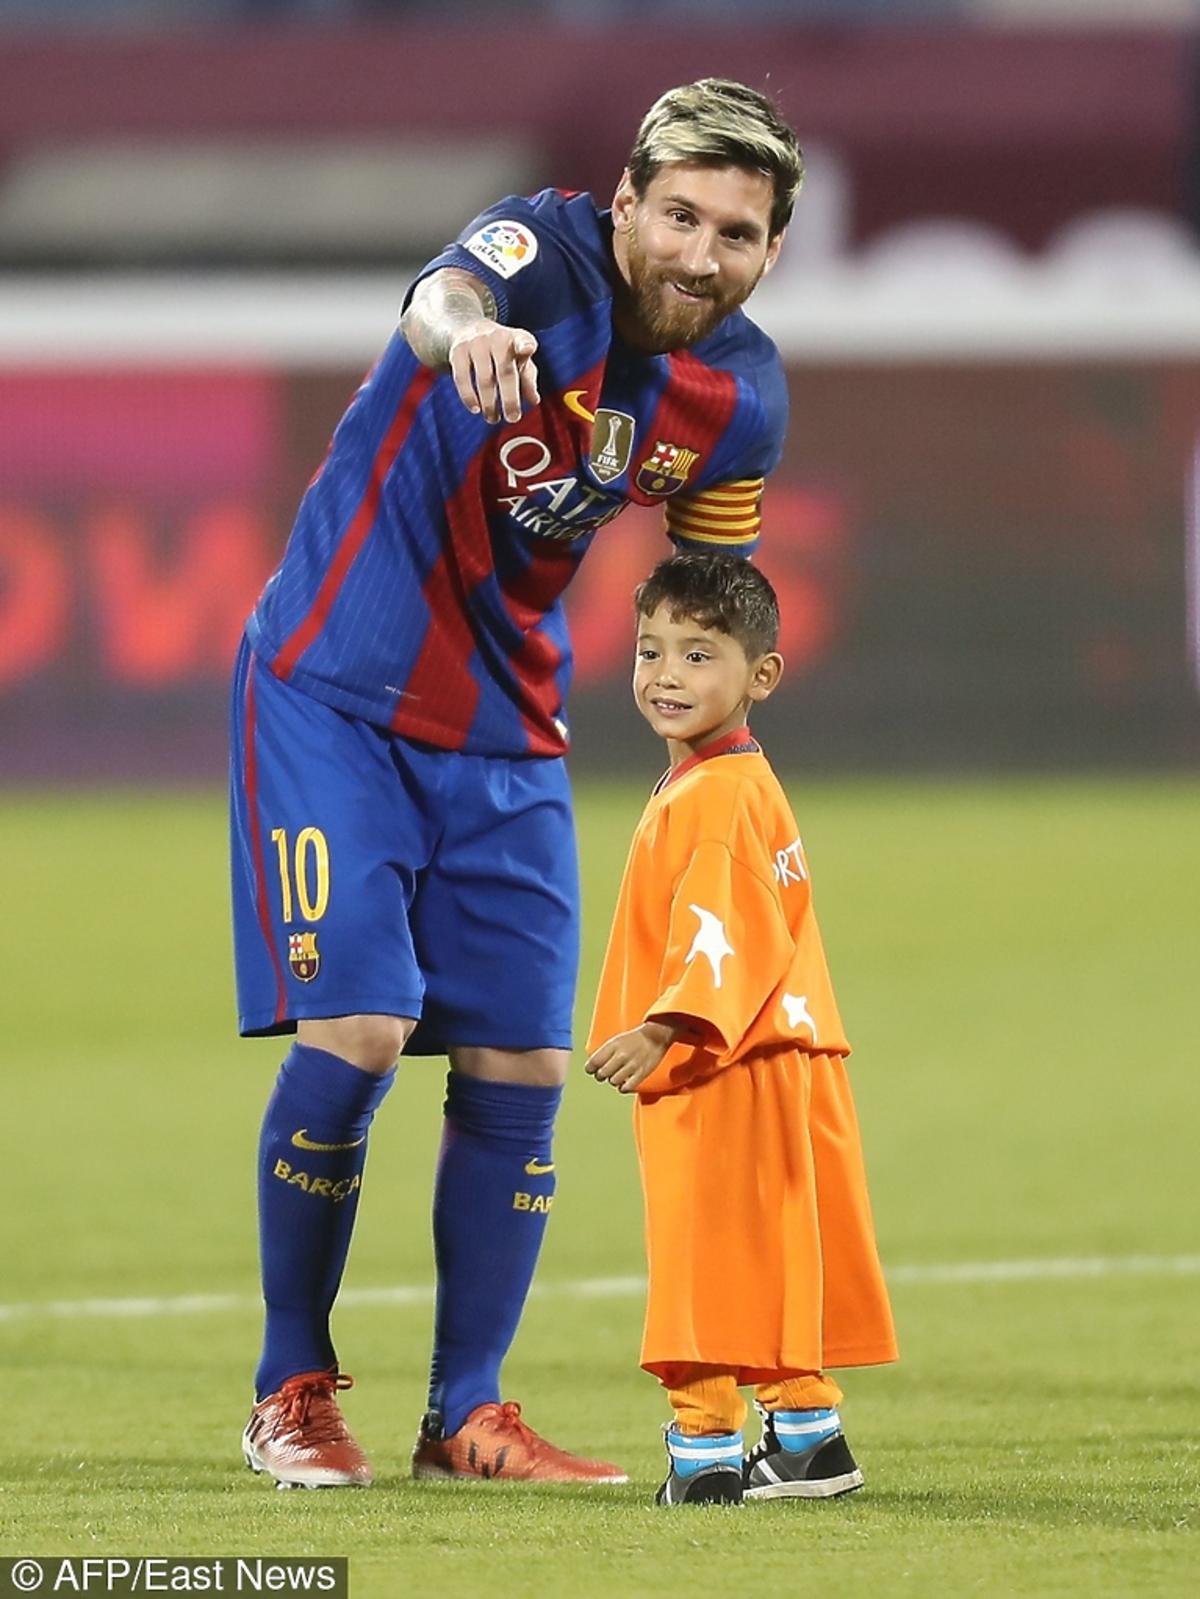 Gracz FC Barcelona spotkał się z afgańskim chłopcem, bohaterem zdjęcia, które zrobiło furrorę w sieci